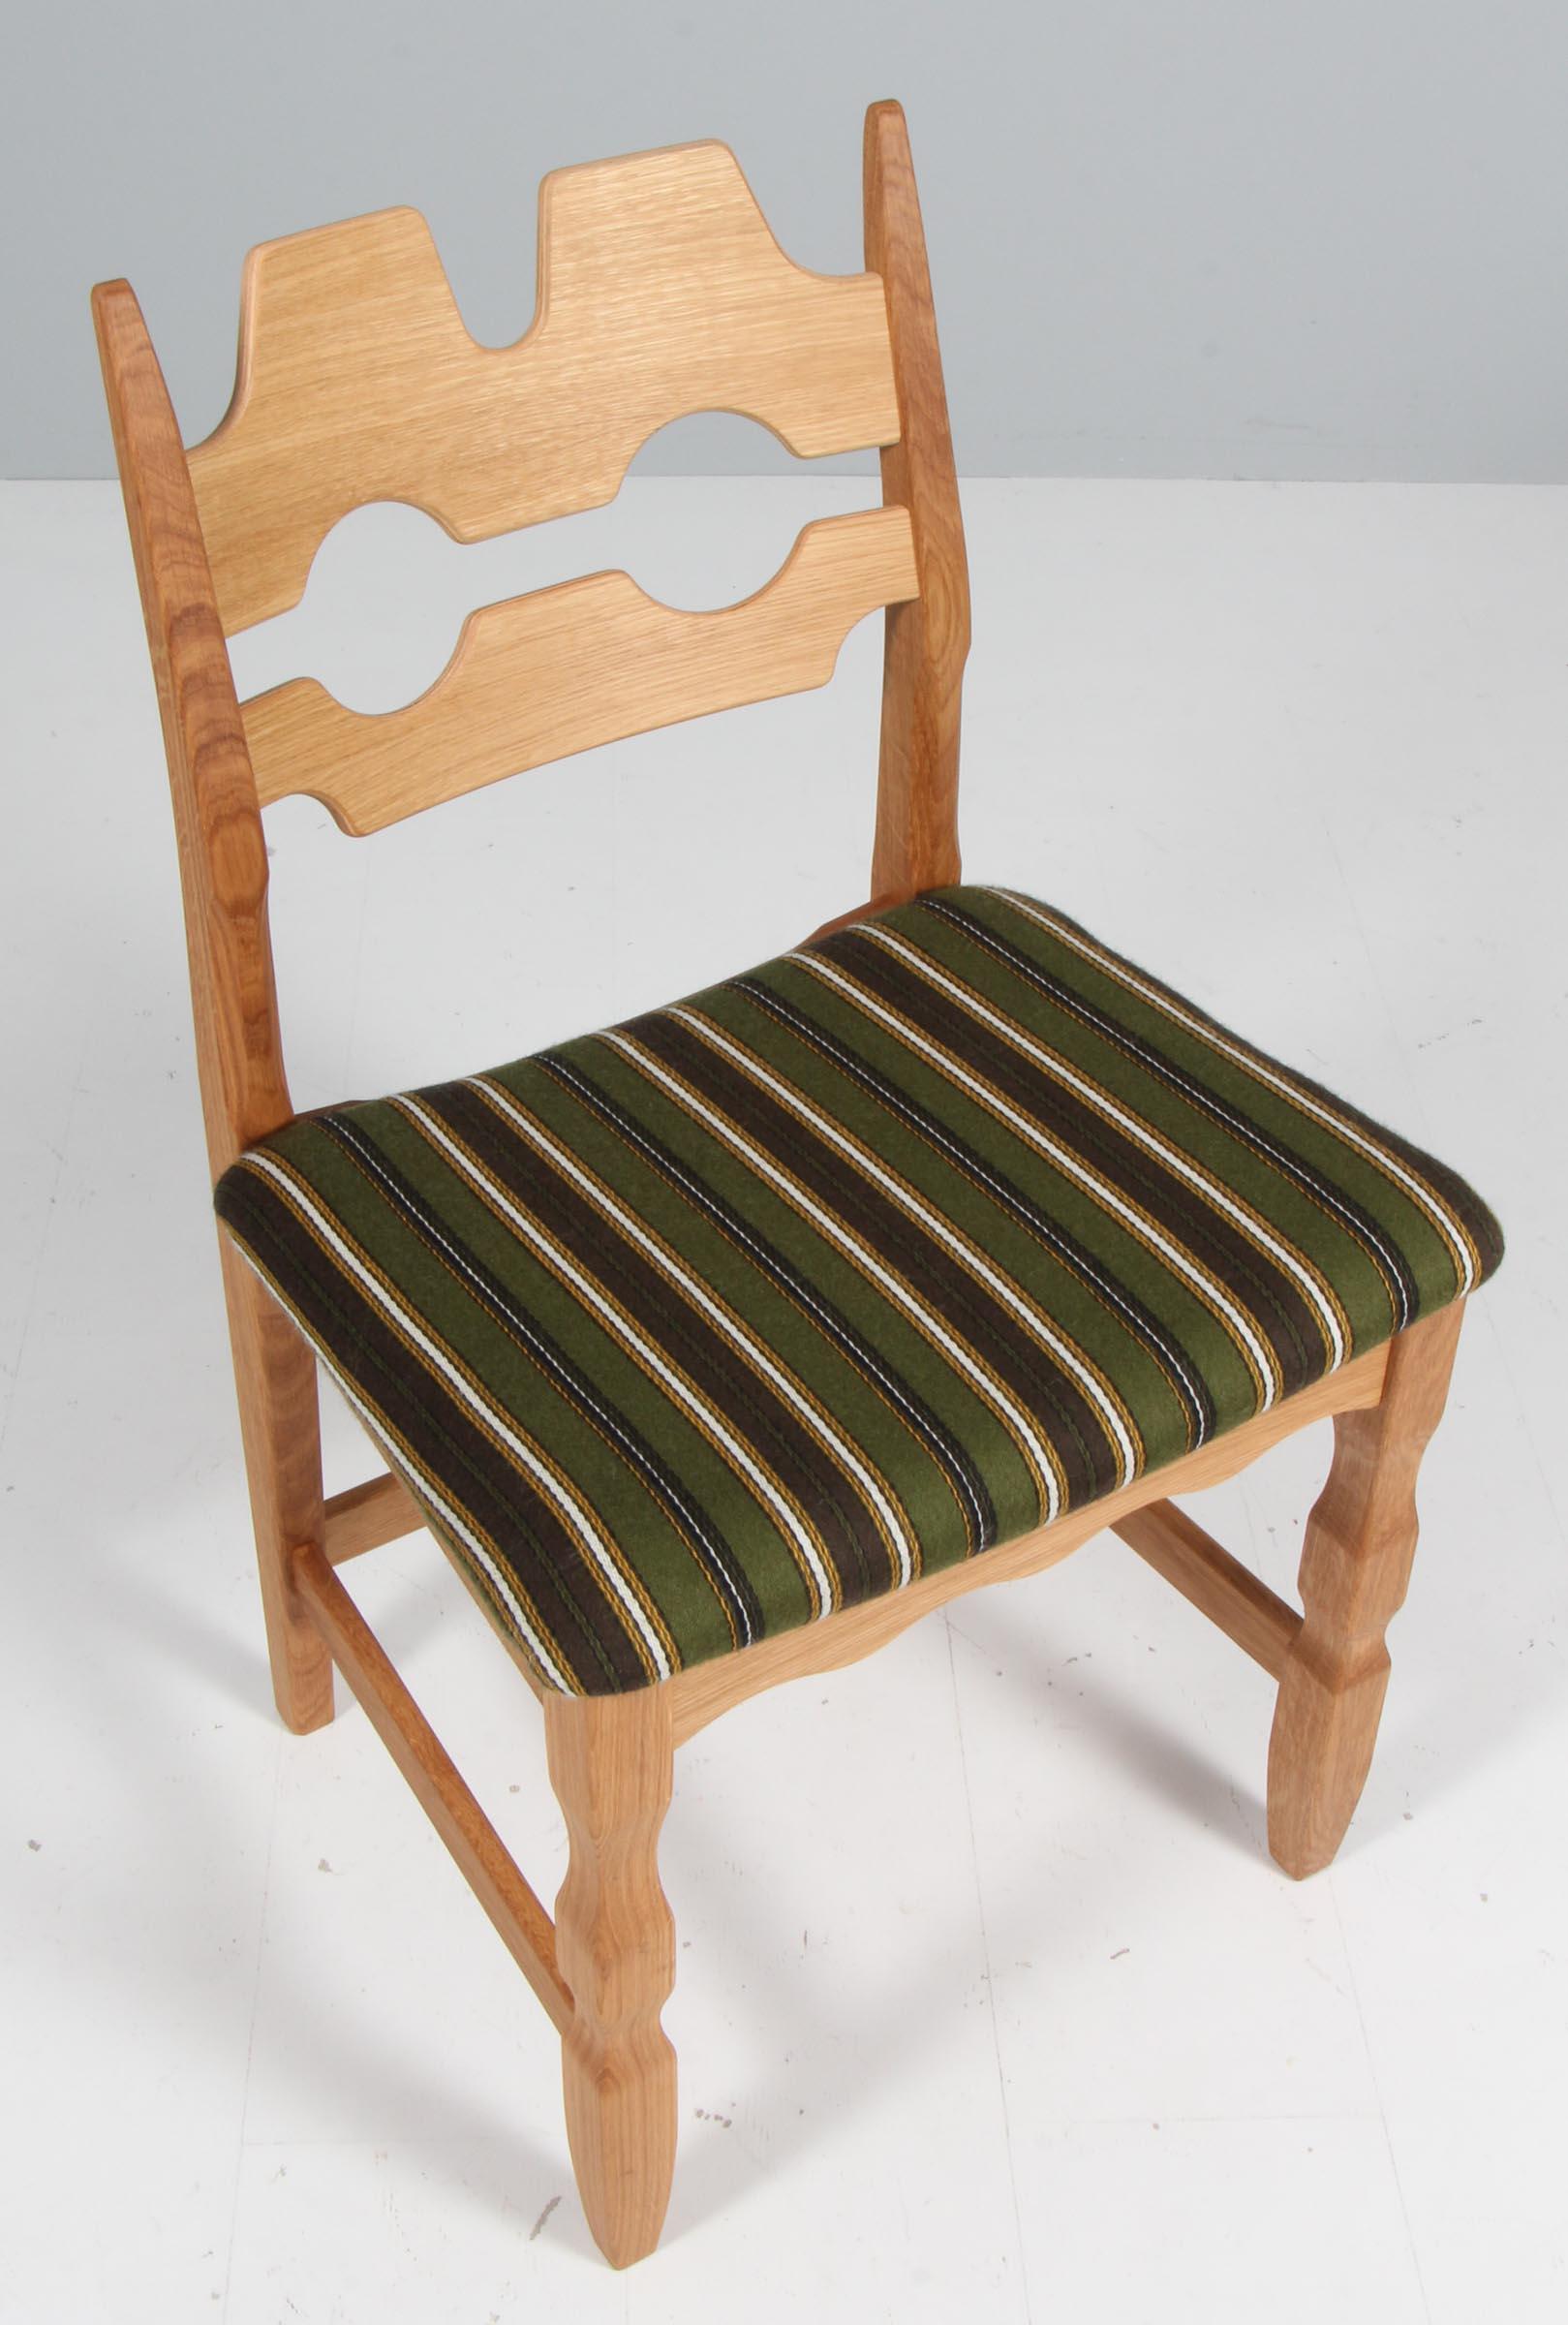 Ensemble de chaises de salle à manger remarquables de Henning Kjærnulf, en chêne et tissu Dragør original, comme elles ont été fabriquées à l'origine. Fourni par Danish Art Weavery.

Un design rafraîchissant où le baroque audacieux se marie bien